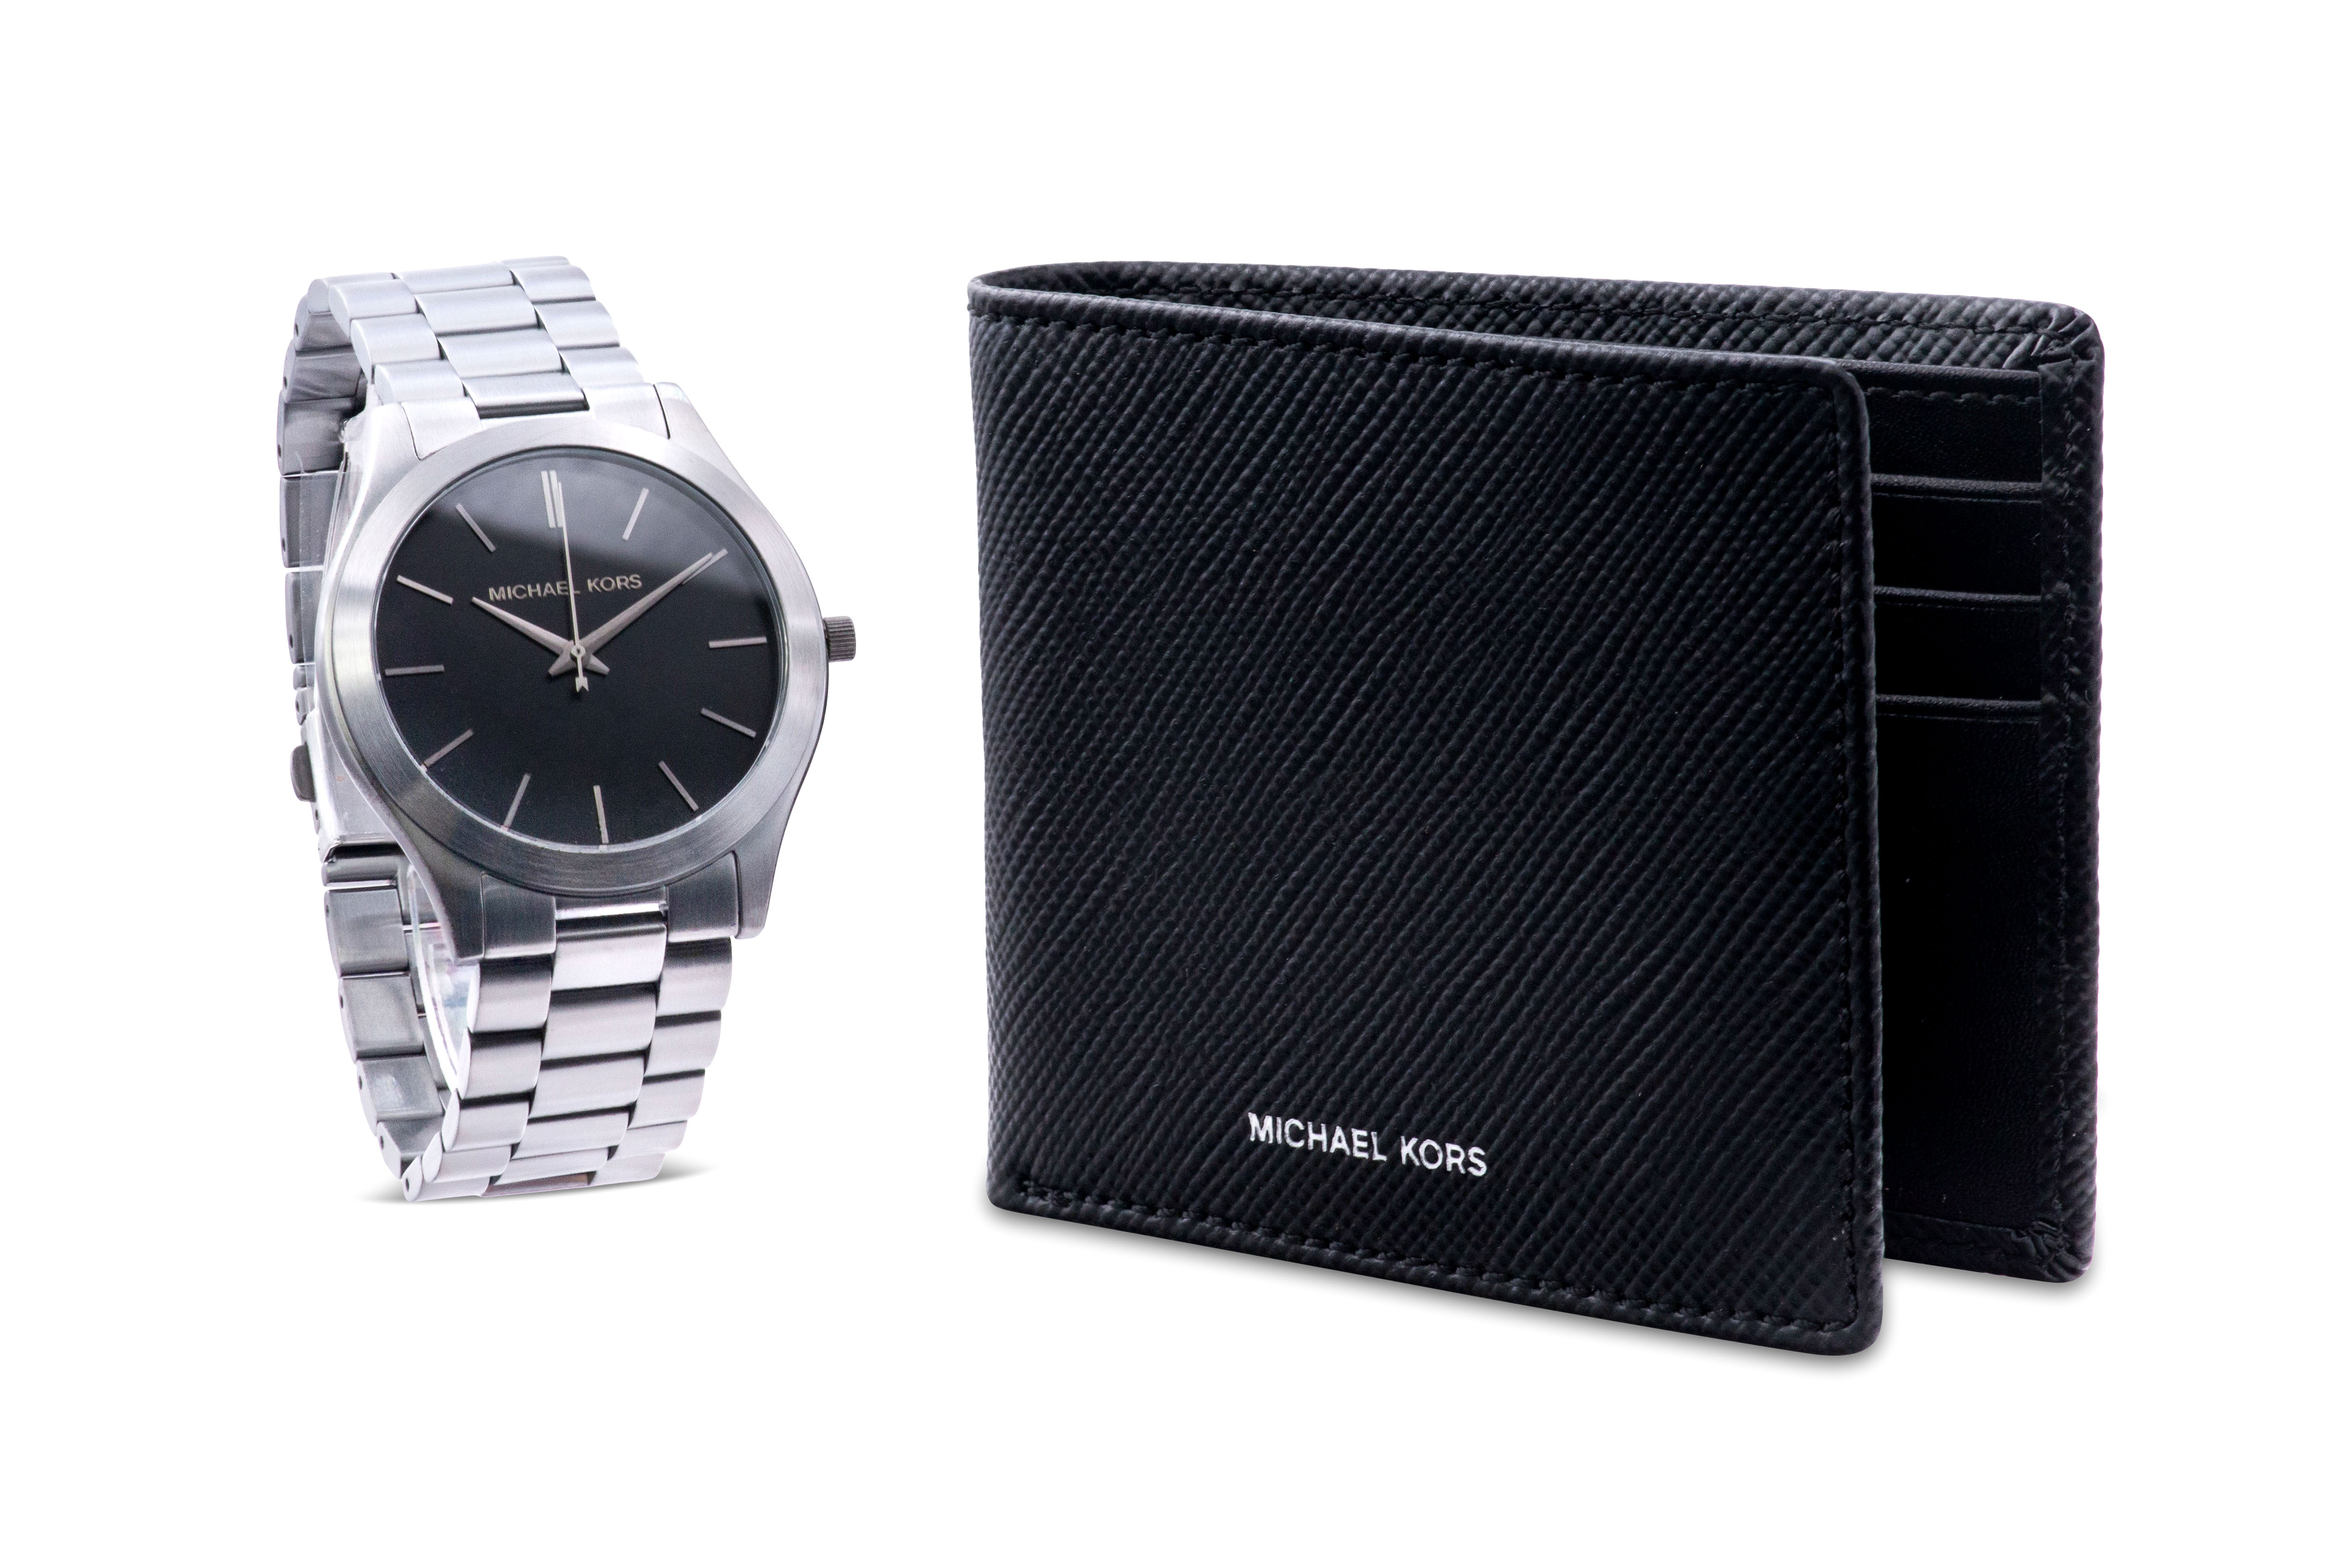 Michael Kors Slim Runway Mens Watch and Wallet Gift Set MK1044 796483536401  | eBay